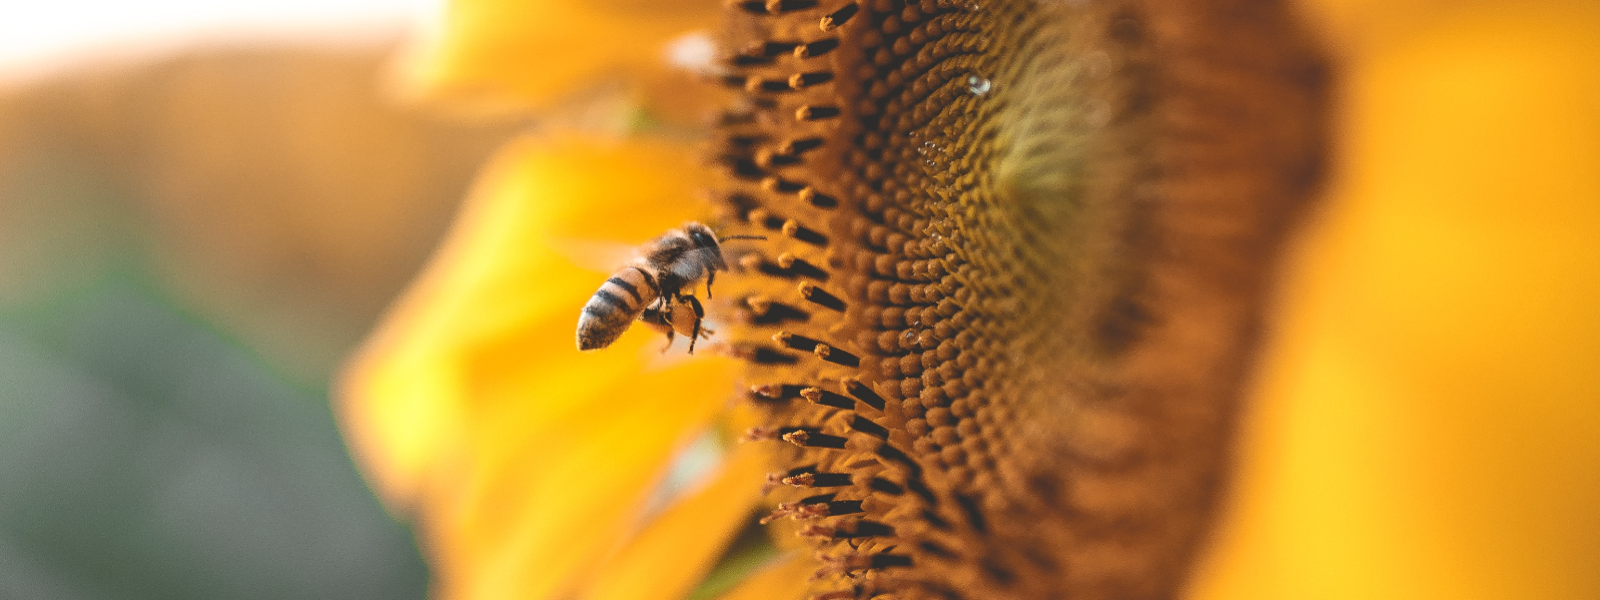 LÕUNA-EESTI MESI OÜ - Tegeleme puhta mee tootmise ja müügiga, pakkudes kvaliteetseid mesindussaadusi oma veebipoes, ni...